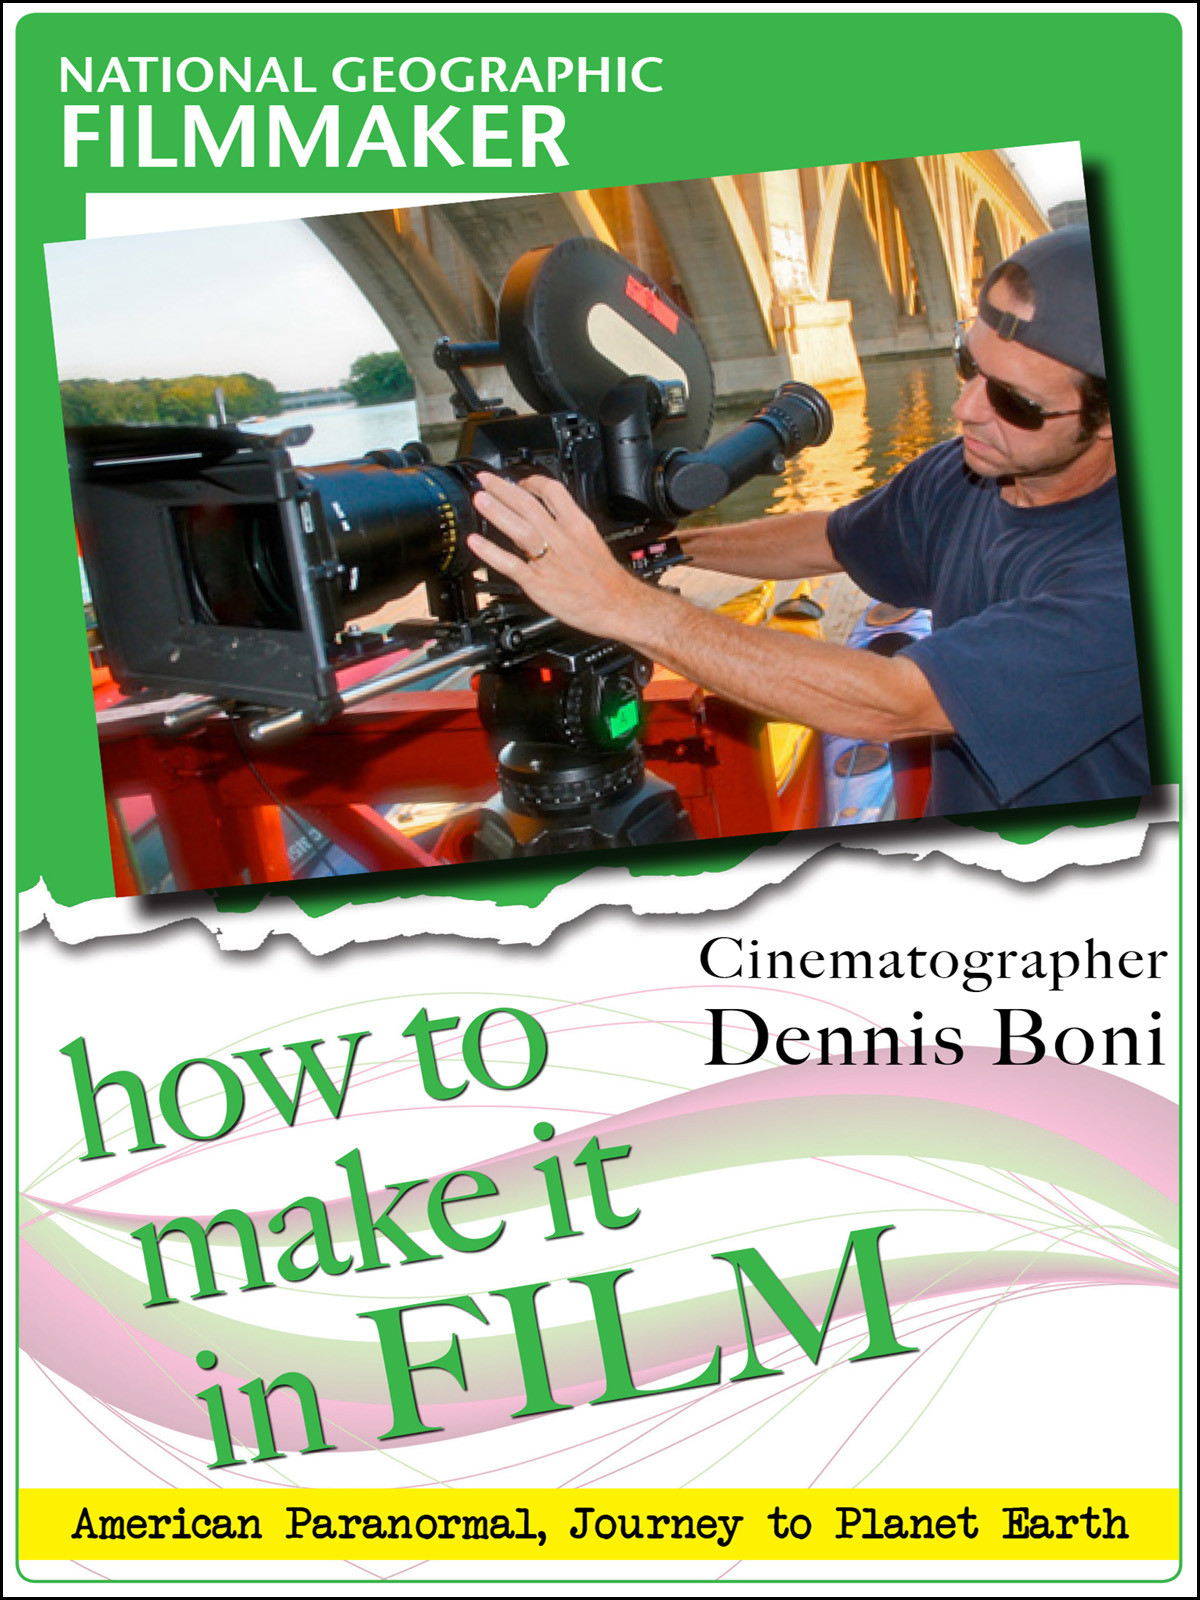 F2830 - National Geographic Filmmaker Cinematographer Dennis Boni